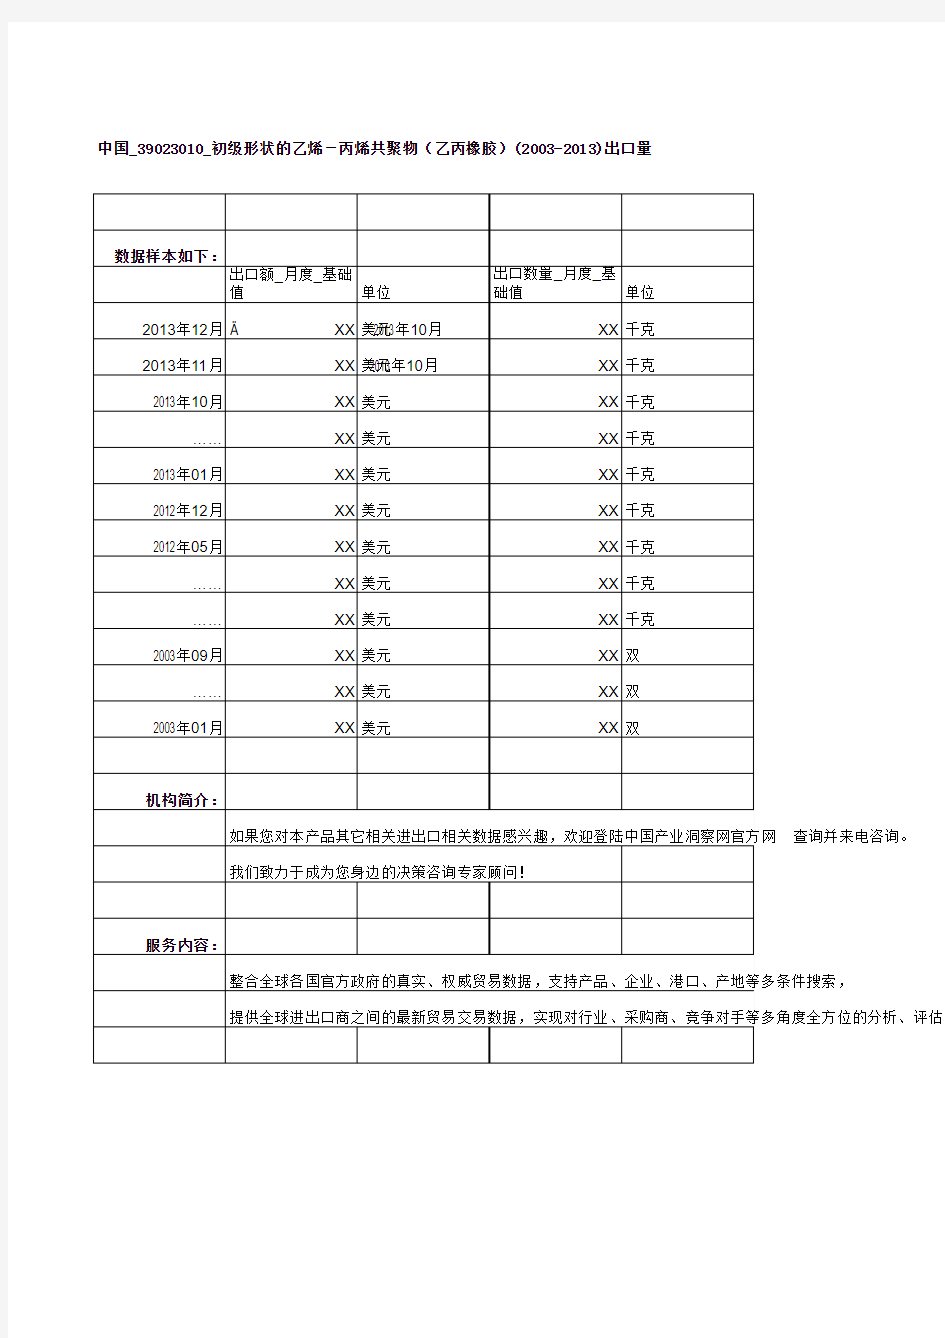 中国_39023010_初级形状的乙烯-丙烯共聚物(乙丙橡胶)(2003-2013)出口量及出口额